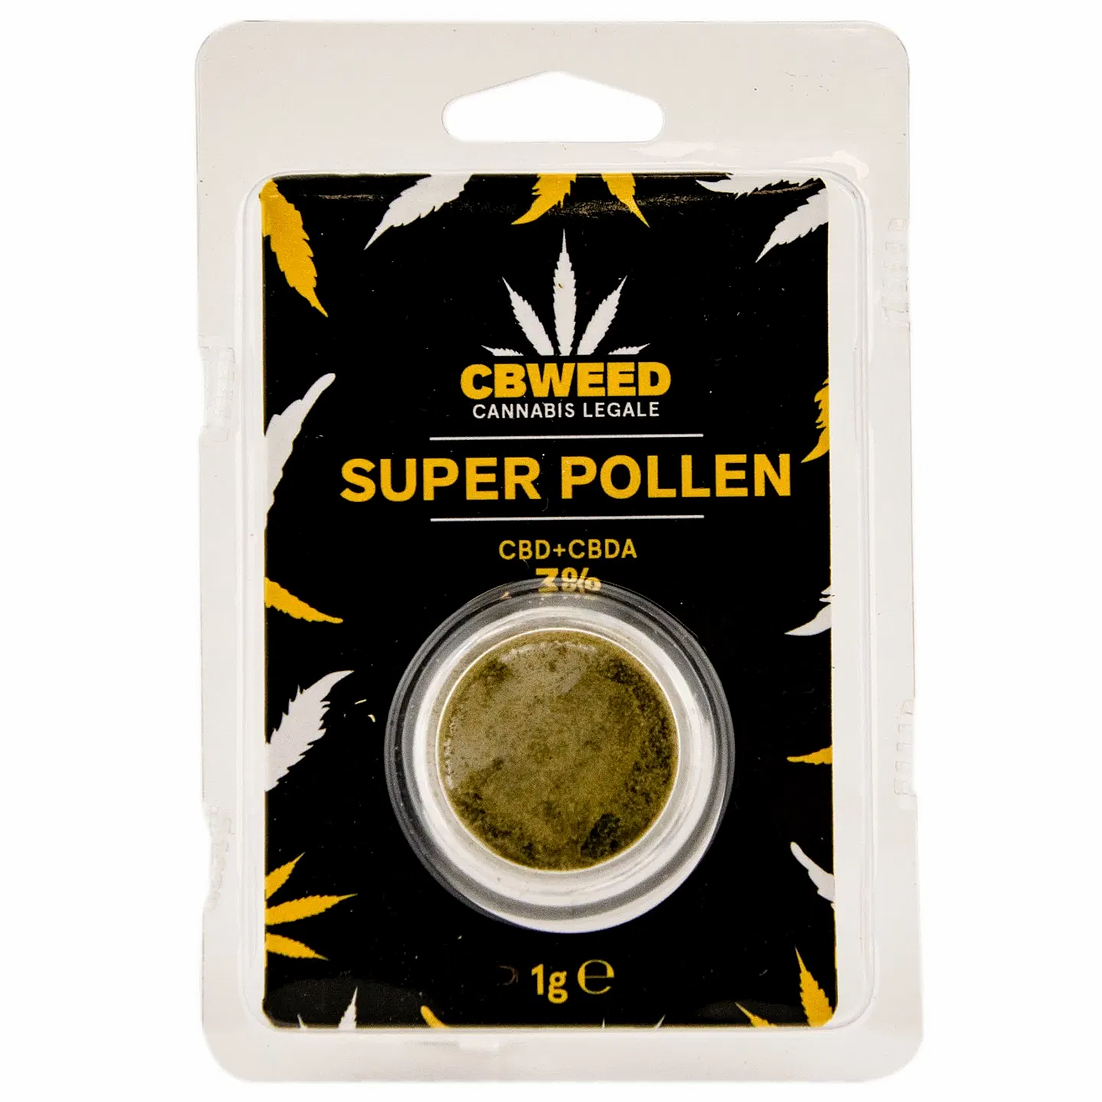 Super pollen 1g